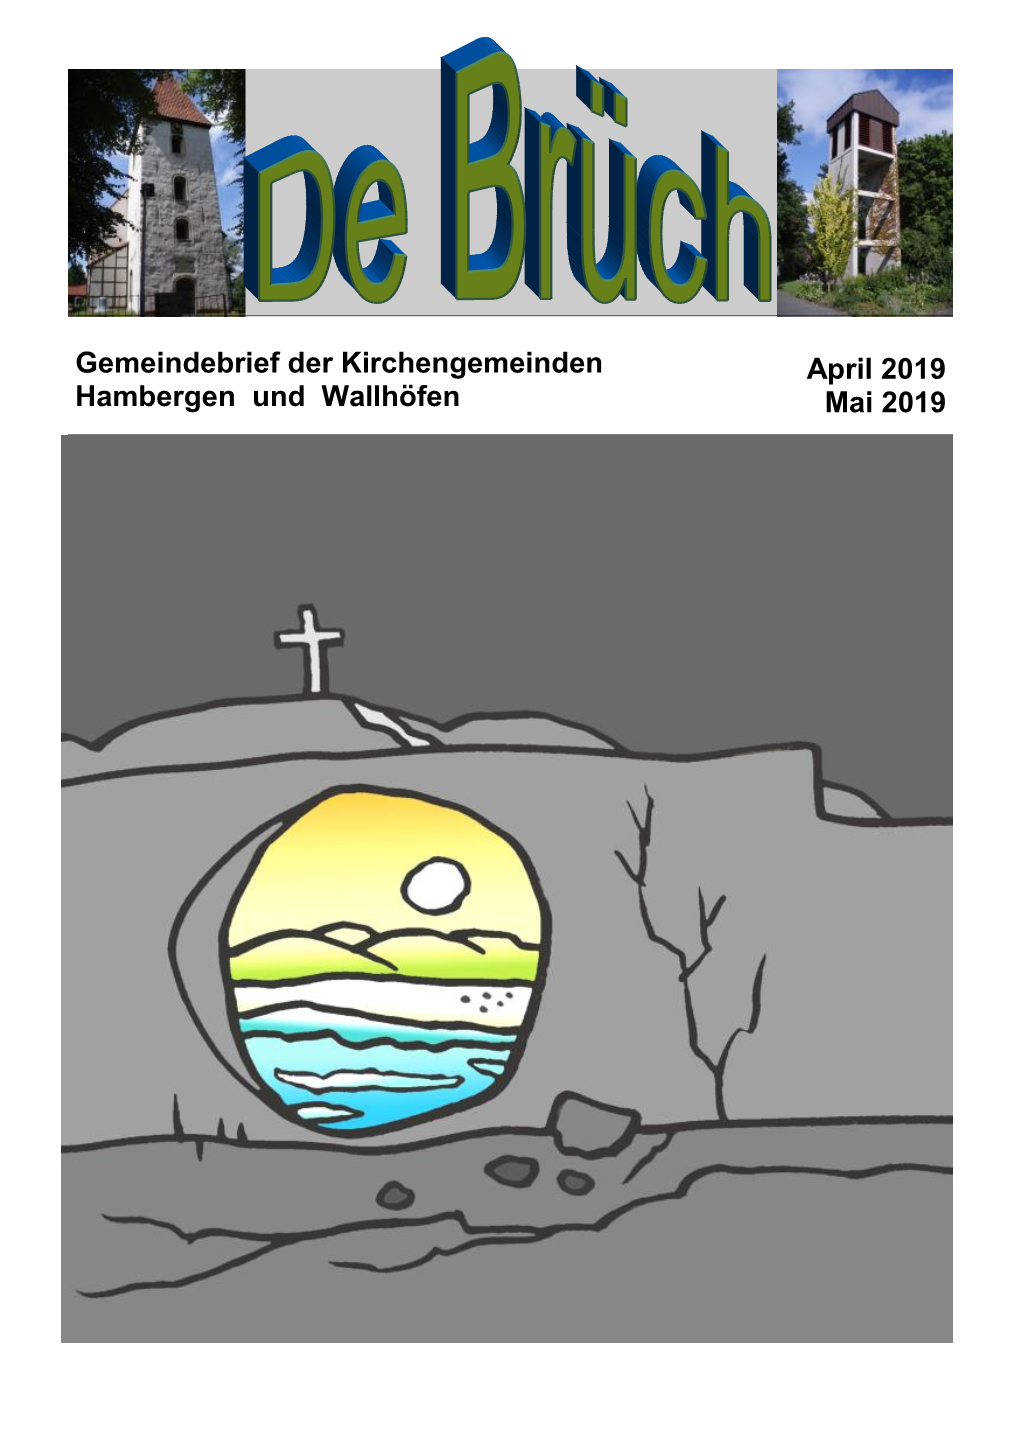 Gemeindebrief Der Kirchengemeinden April 2019 Hambergen Und Wallhöfen Mai 2019